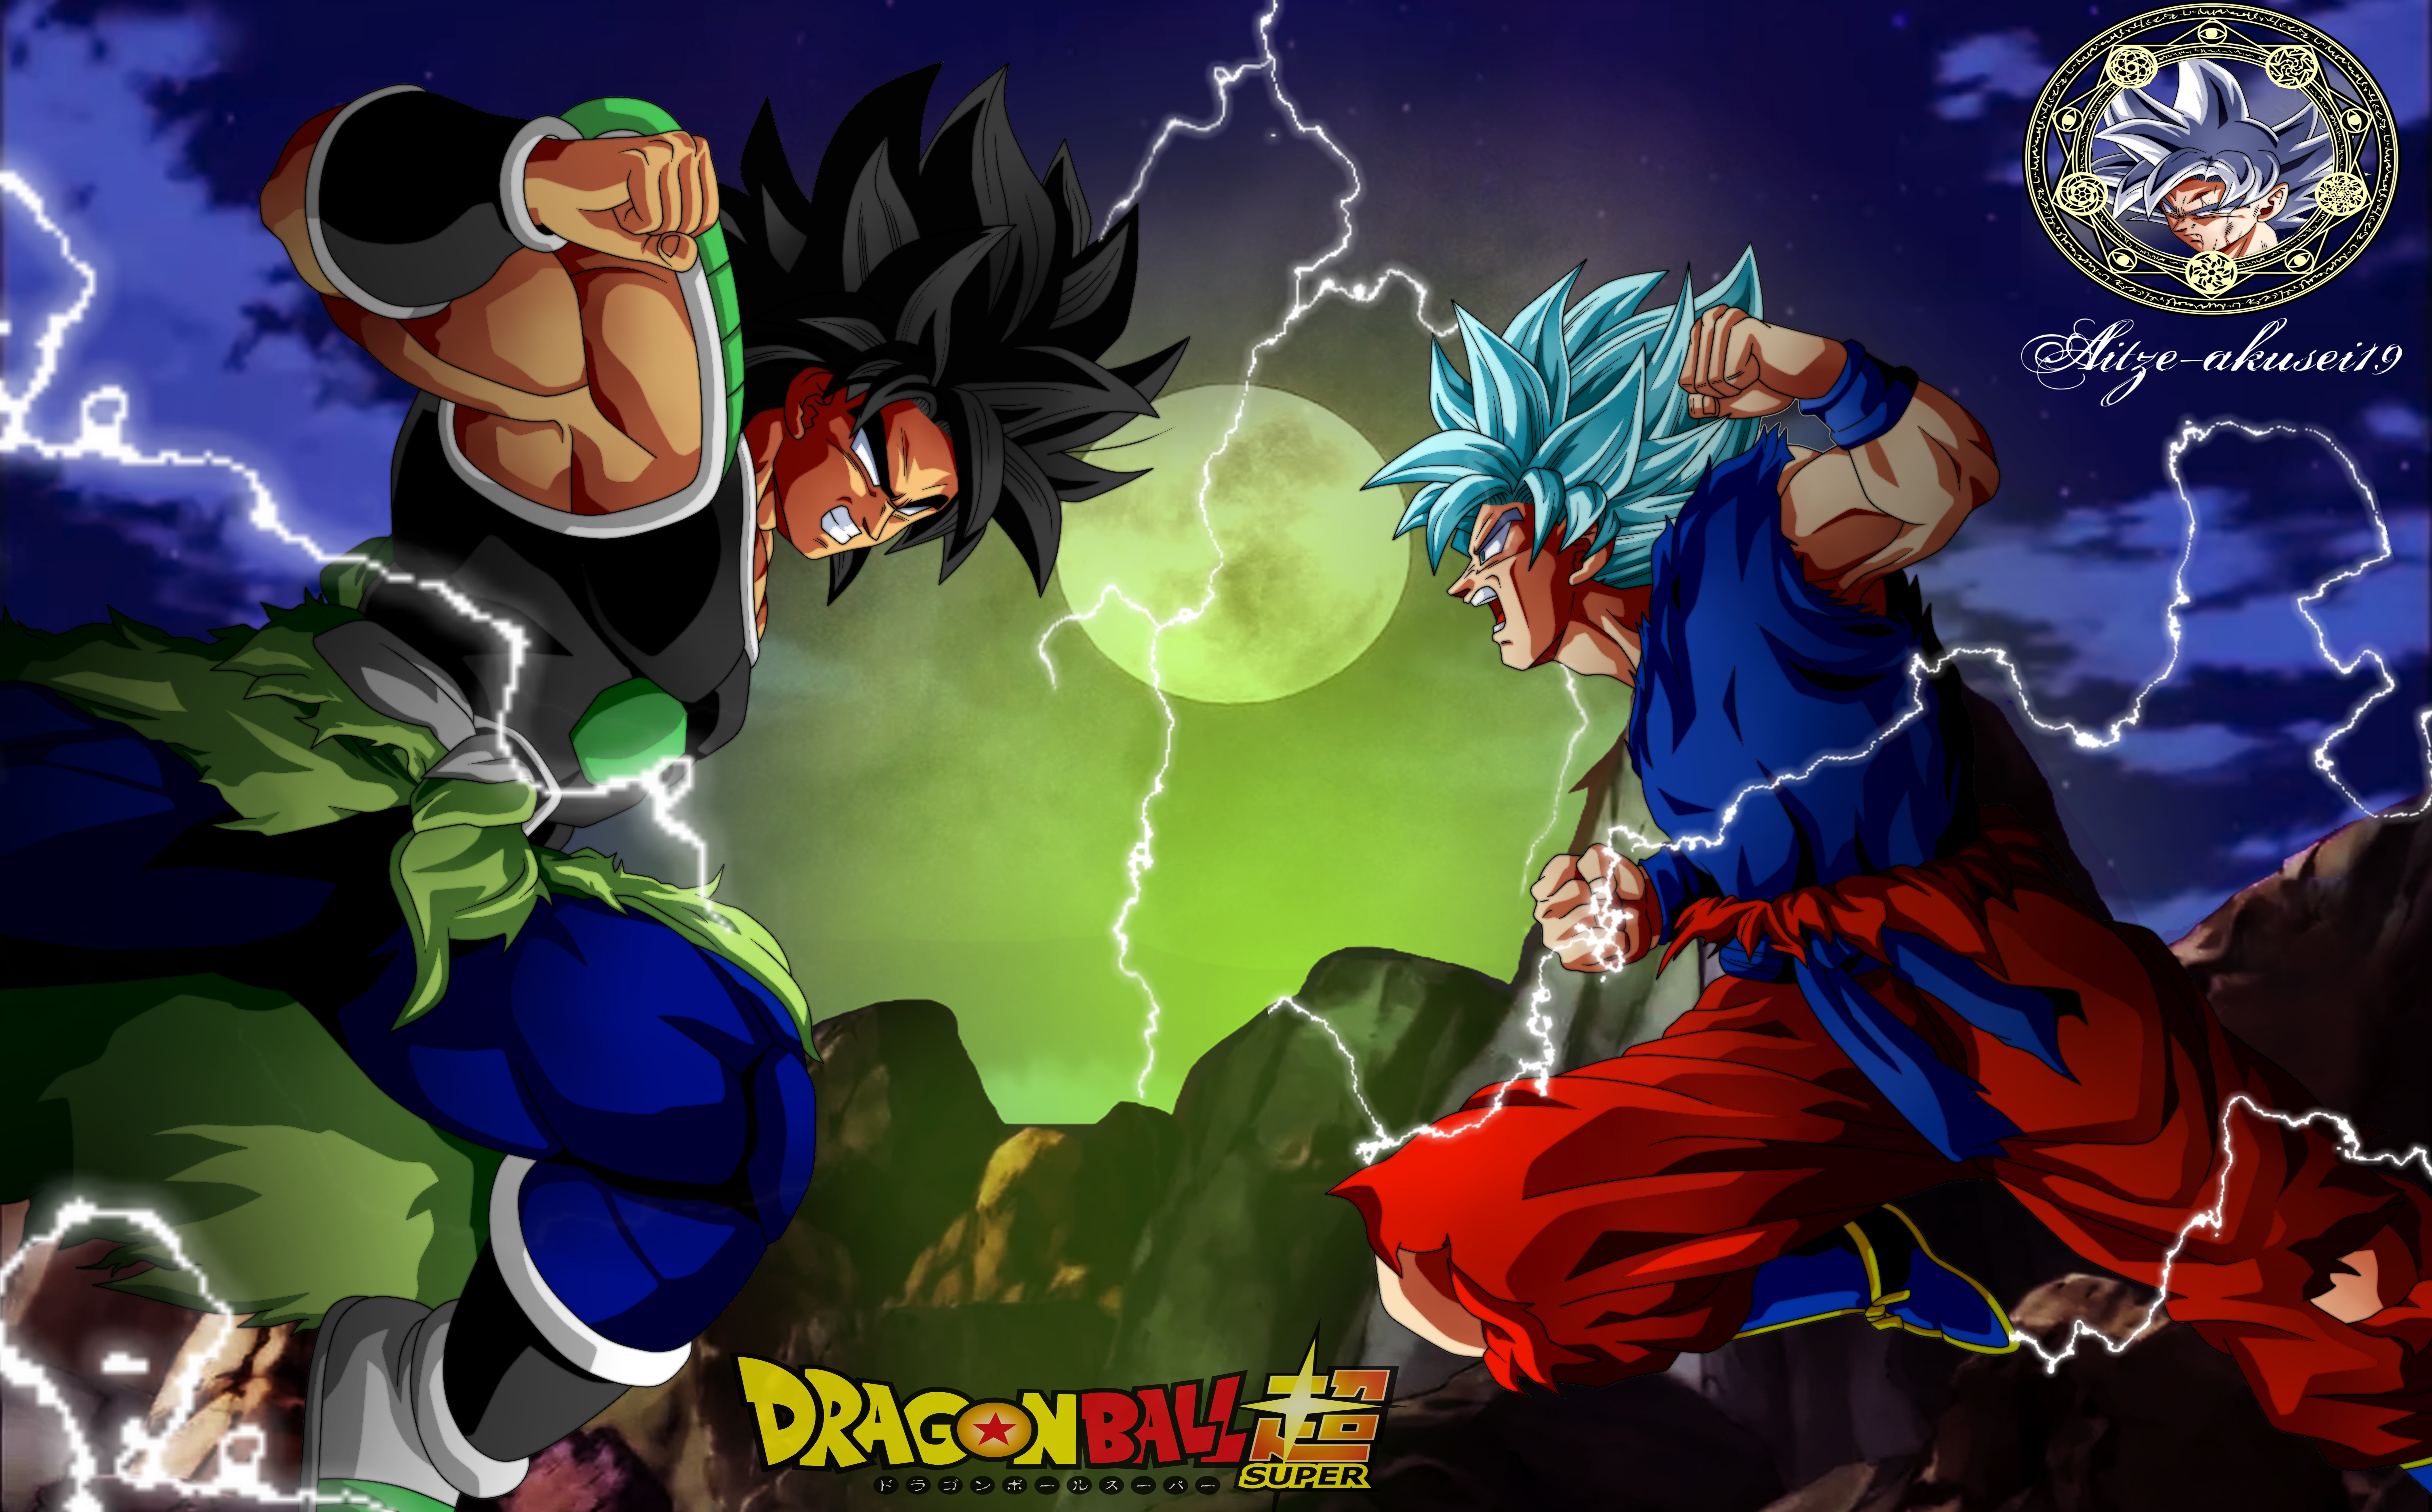 Goku vs Broly by Ezequiel Hernandez de la cruz